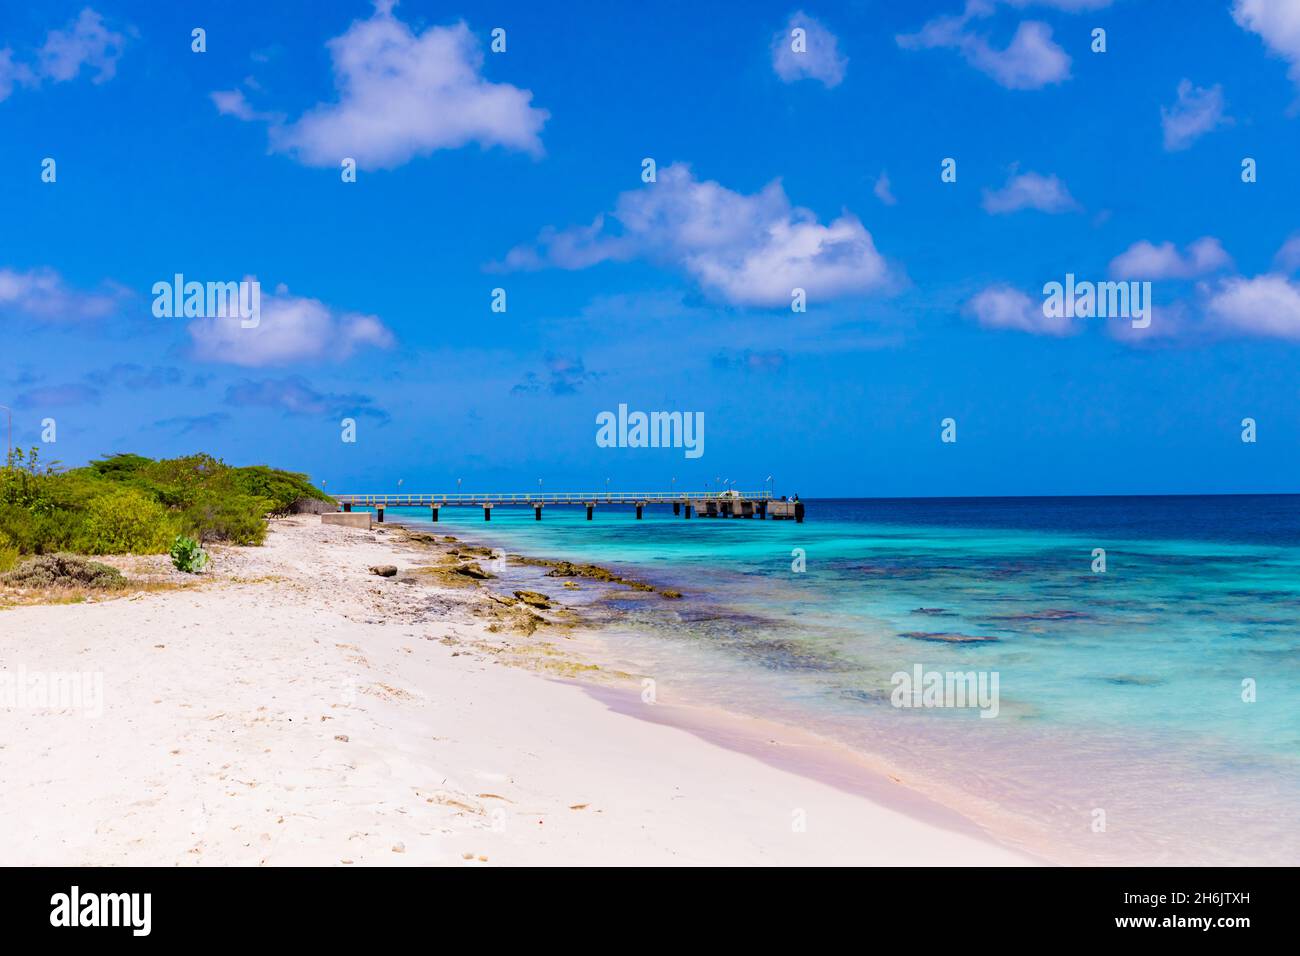 Vista de las playas de arena blanca y aguas azules claras de Bonaire, Antillas Holandesas, Caribe, Centroamérica Foto de stock